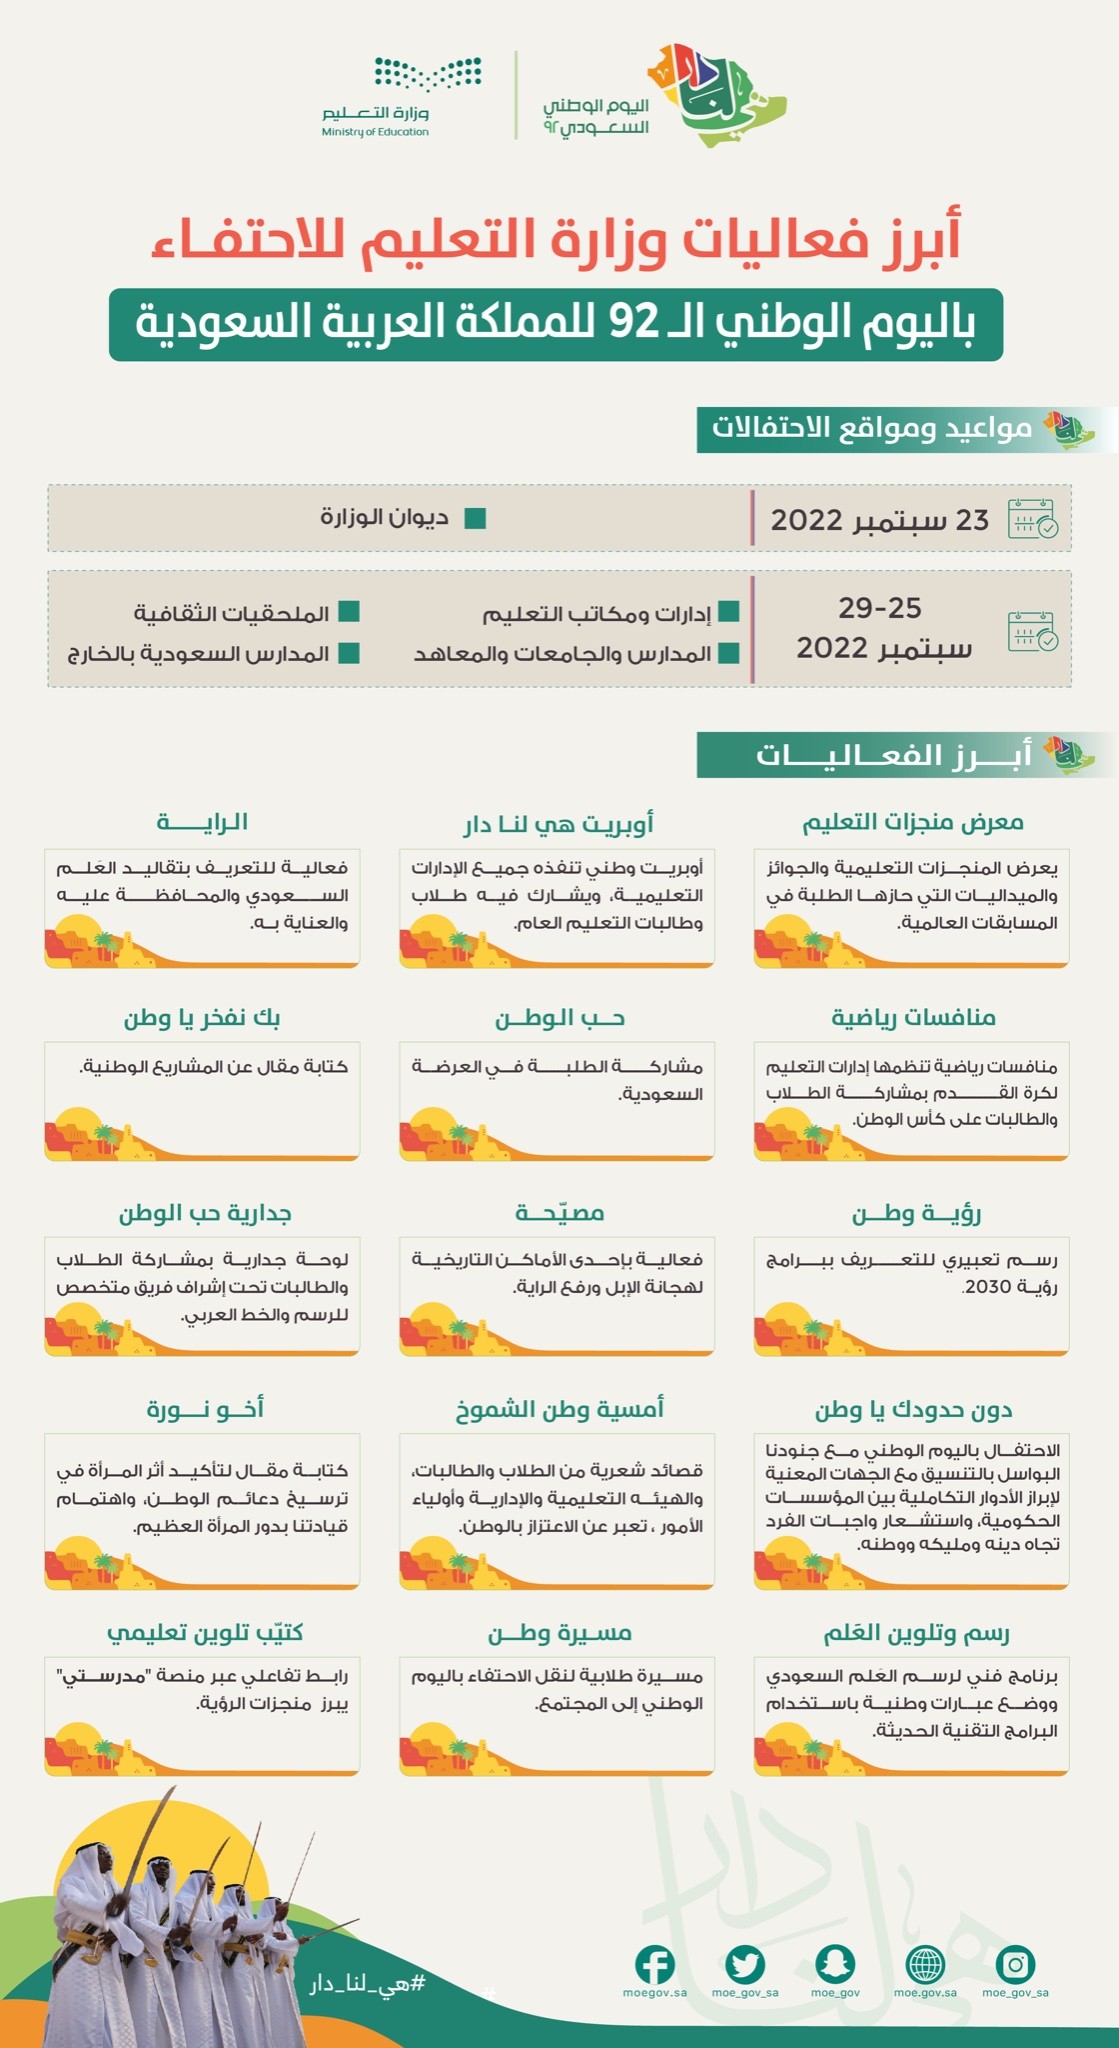 موعد وموقع أبرز فعاليات وزارة التعليم للاحتفاء باليوم الوطني بالسعودية .jpg